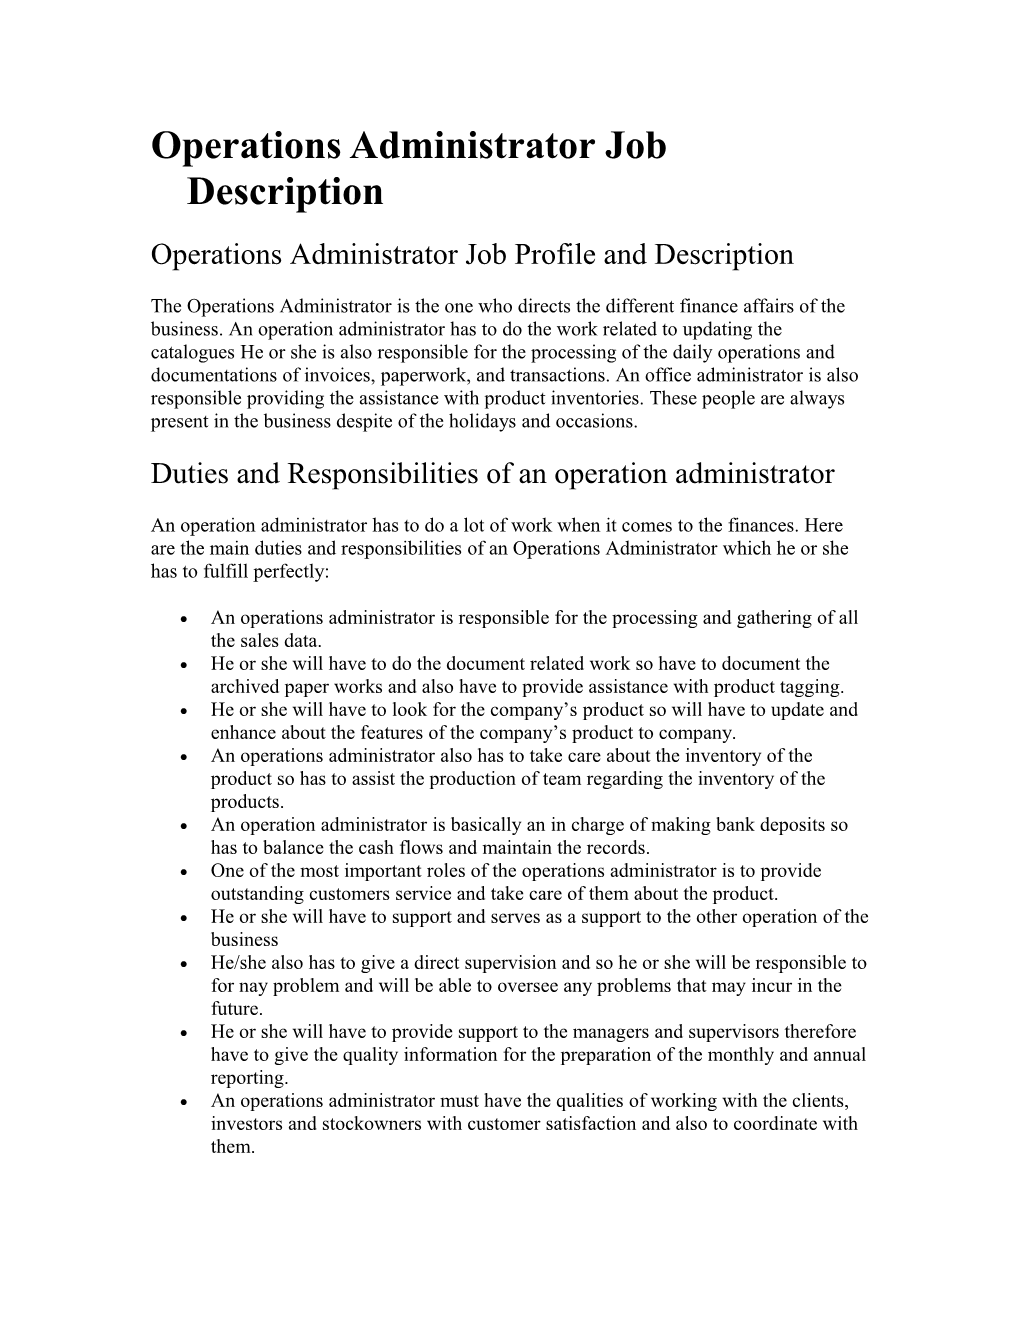 Operations Administrator Job Description